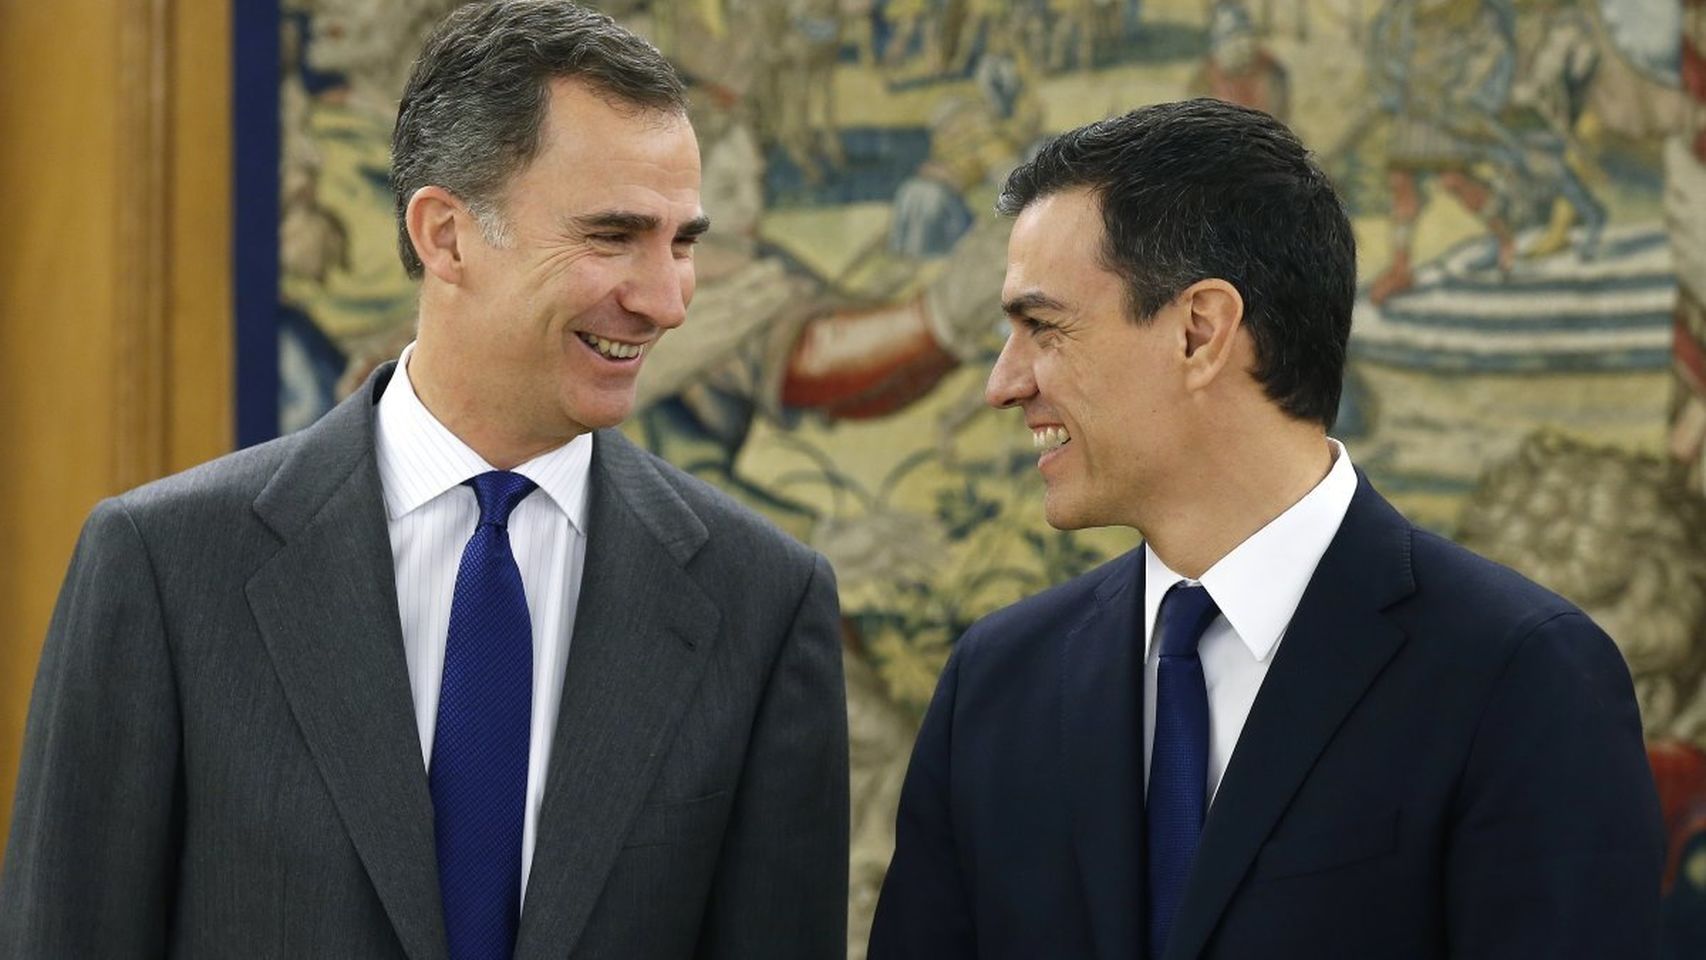 Felipe VI et Pedro Sanchez joignent leurs efforts pour regagner la confiance du Maroc